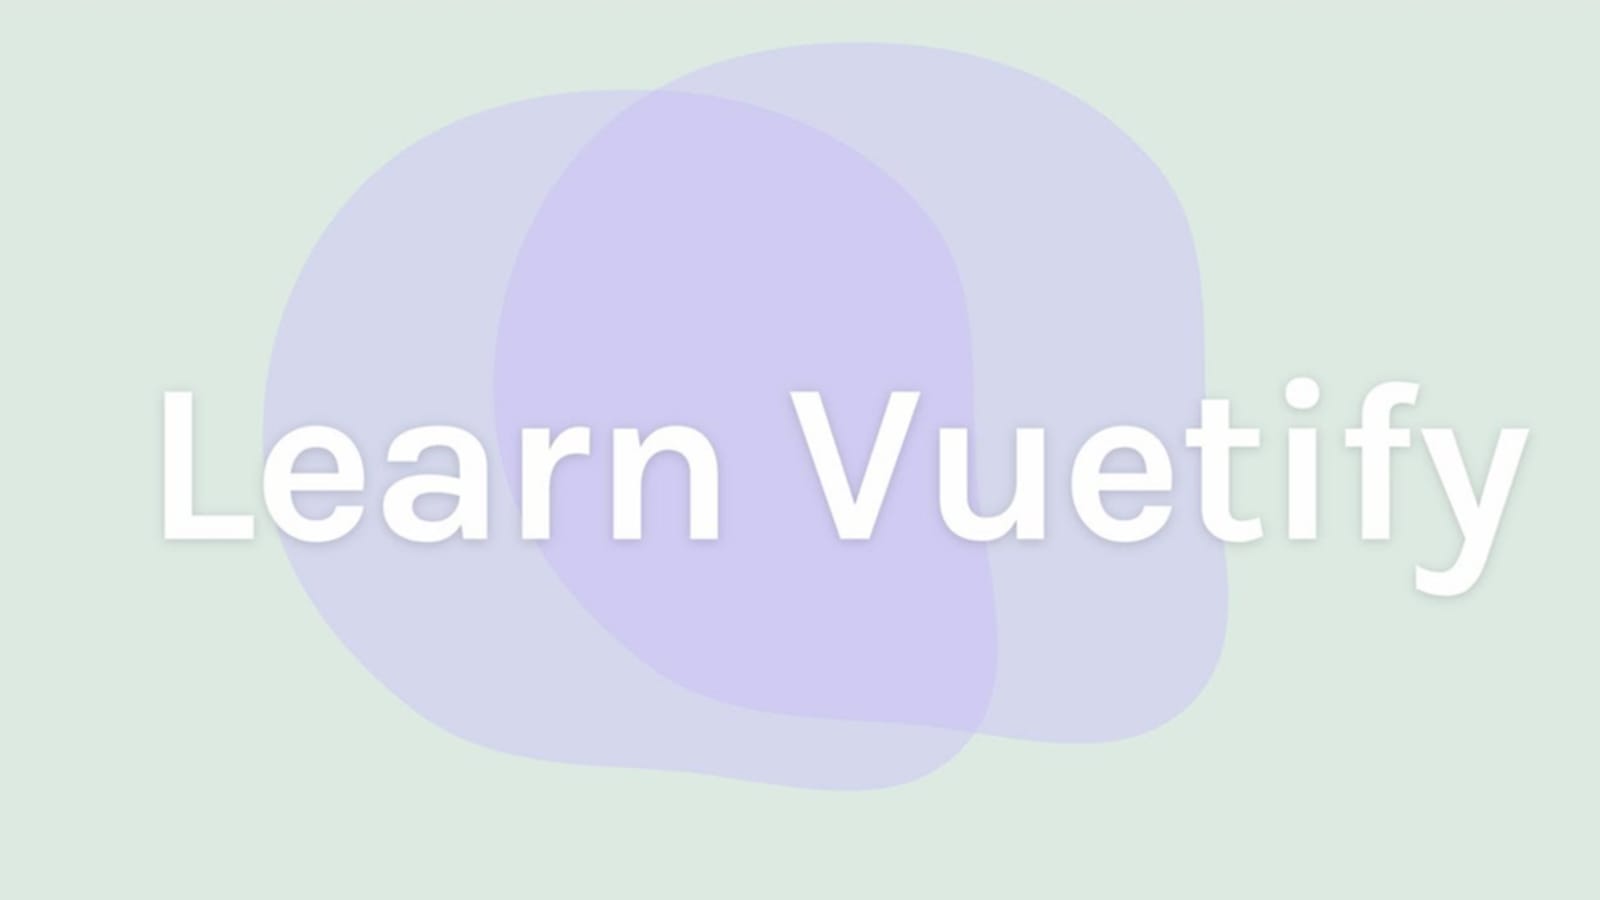 Khóa học Vuetify của chúng tôi là lựa chọn tuyệt vời cho những ai muốn học cách sử dụng framework này. Bạn sẽ học được những kỹ năng cần thiết để thiết kế và phát triển các ứng dụng web chuyên nghiệp.